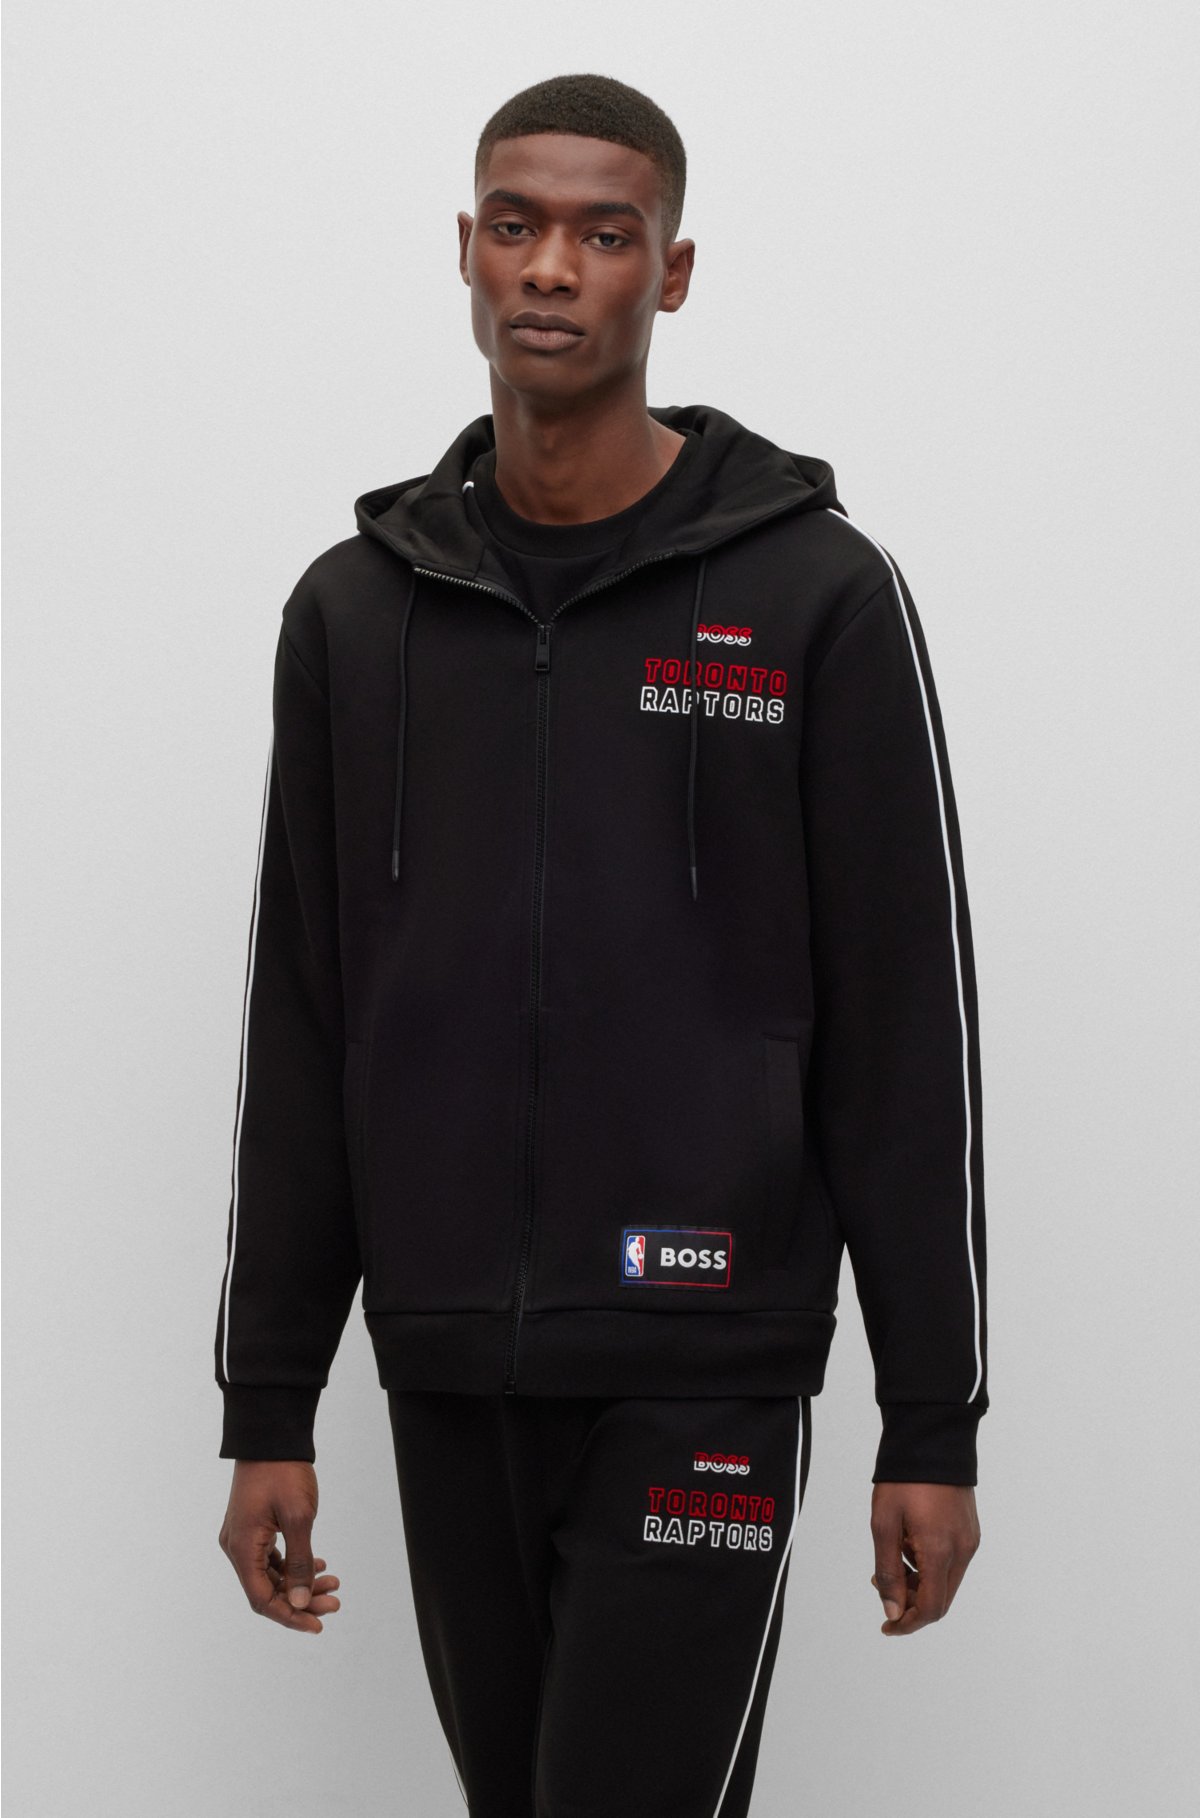 Boss NBA Hoodie-Black - Sweaters - Tops - Men